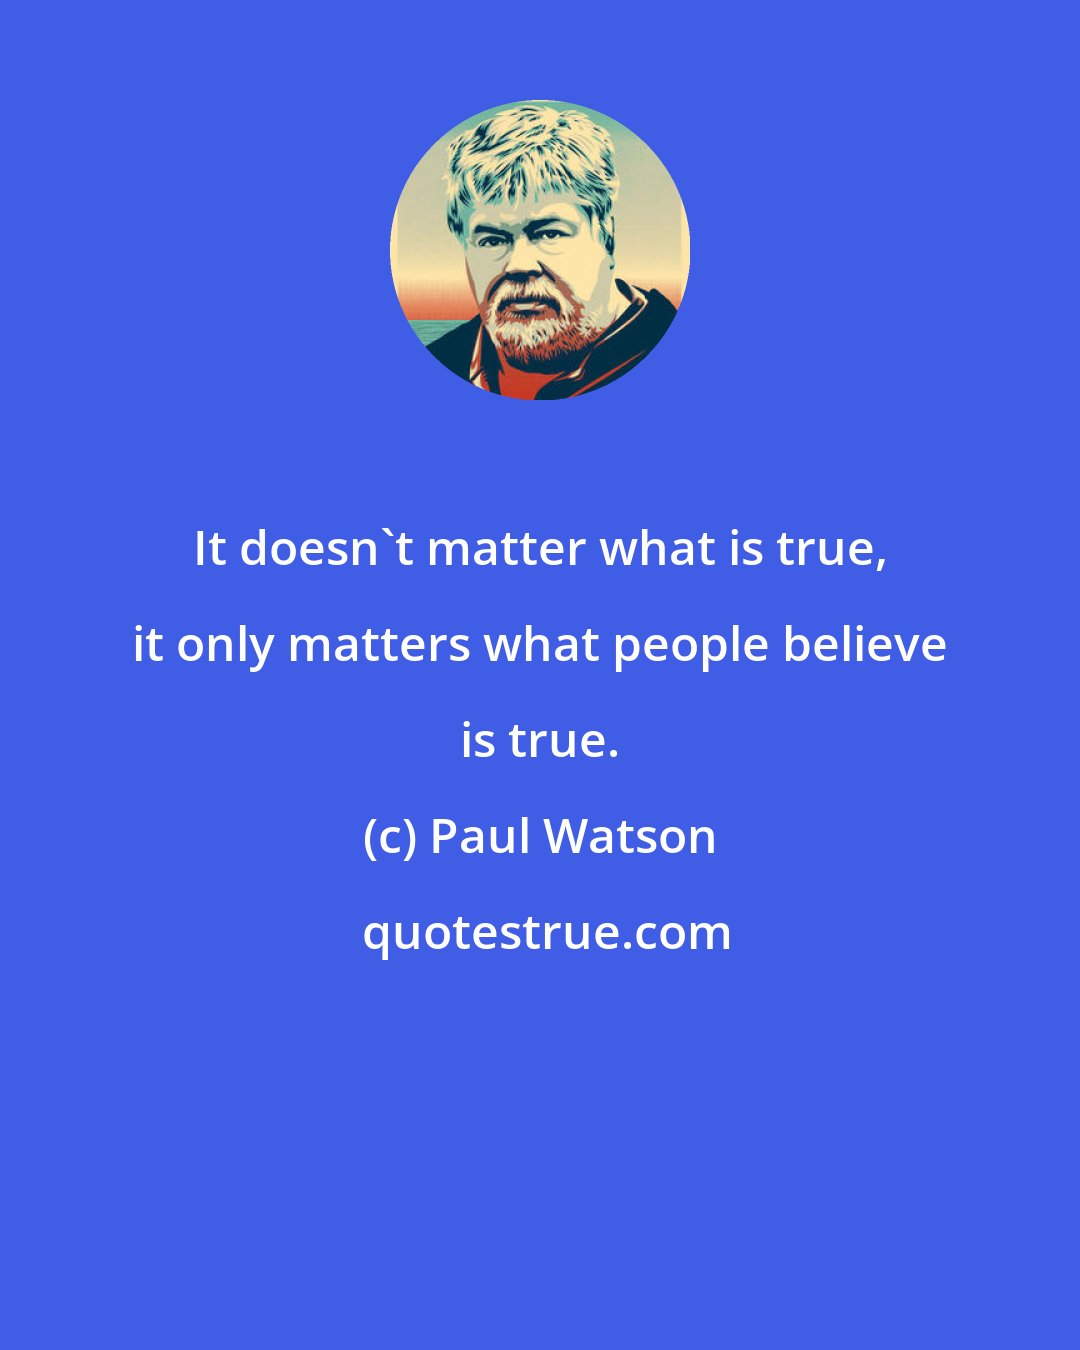 Paul Watson: It doesn't matter what is true, it only matters what people believe is true.